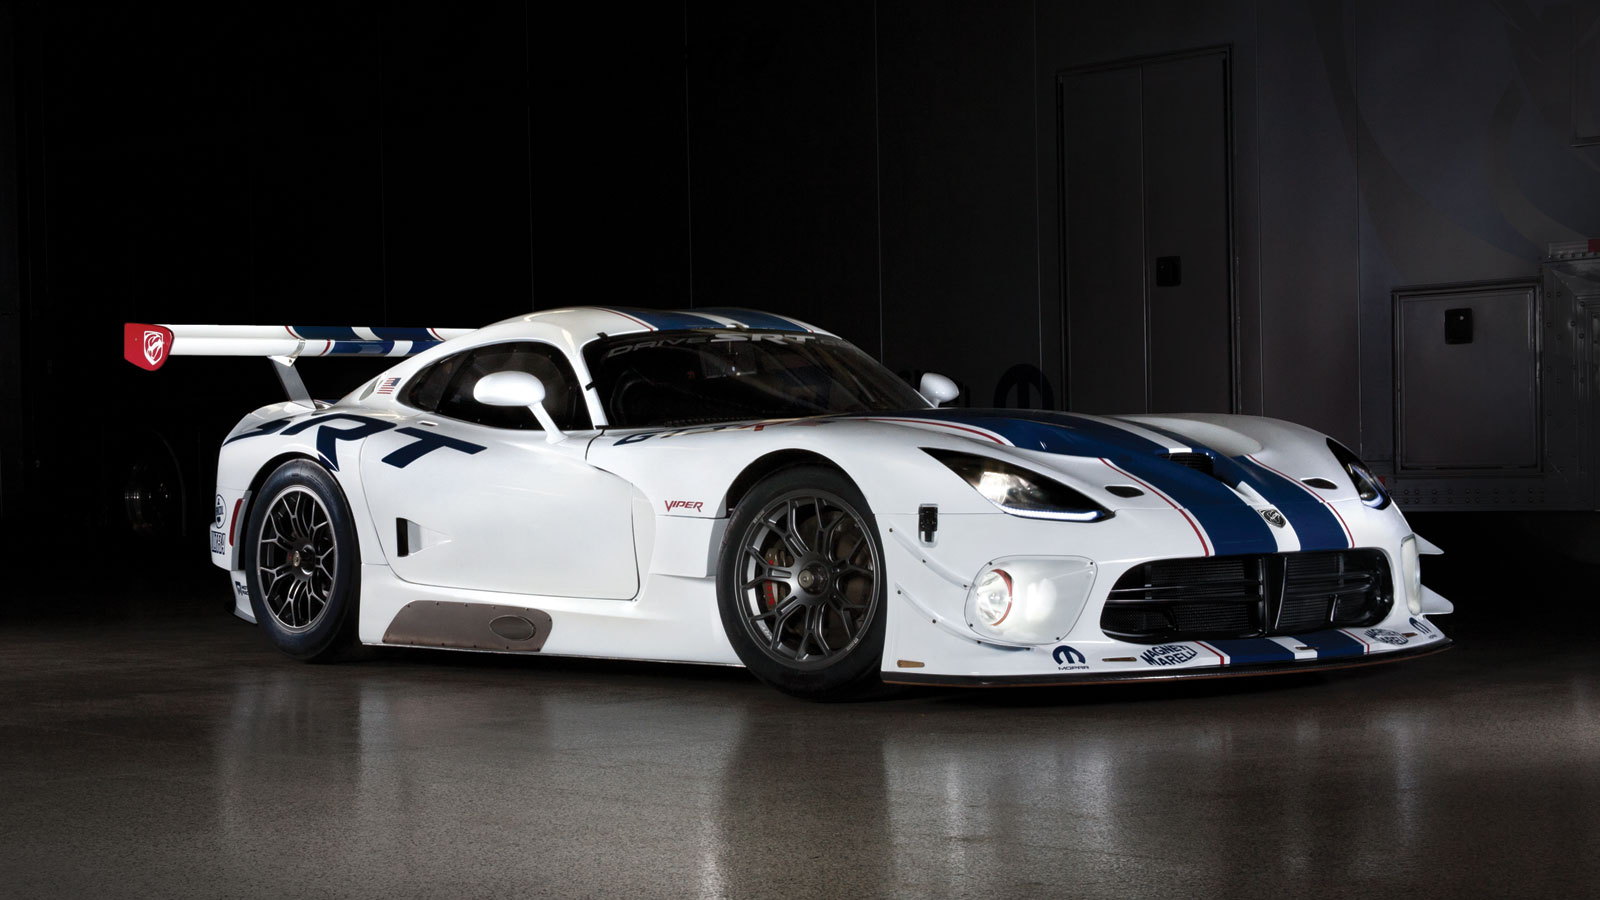 2014 SRT Viper GT3-R race car